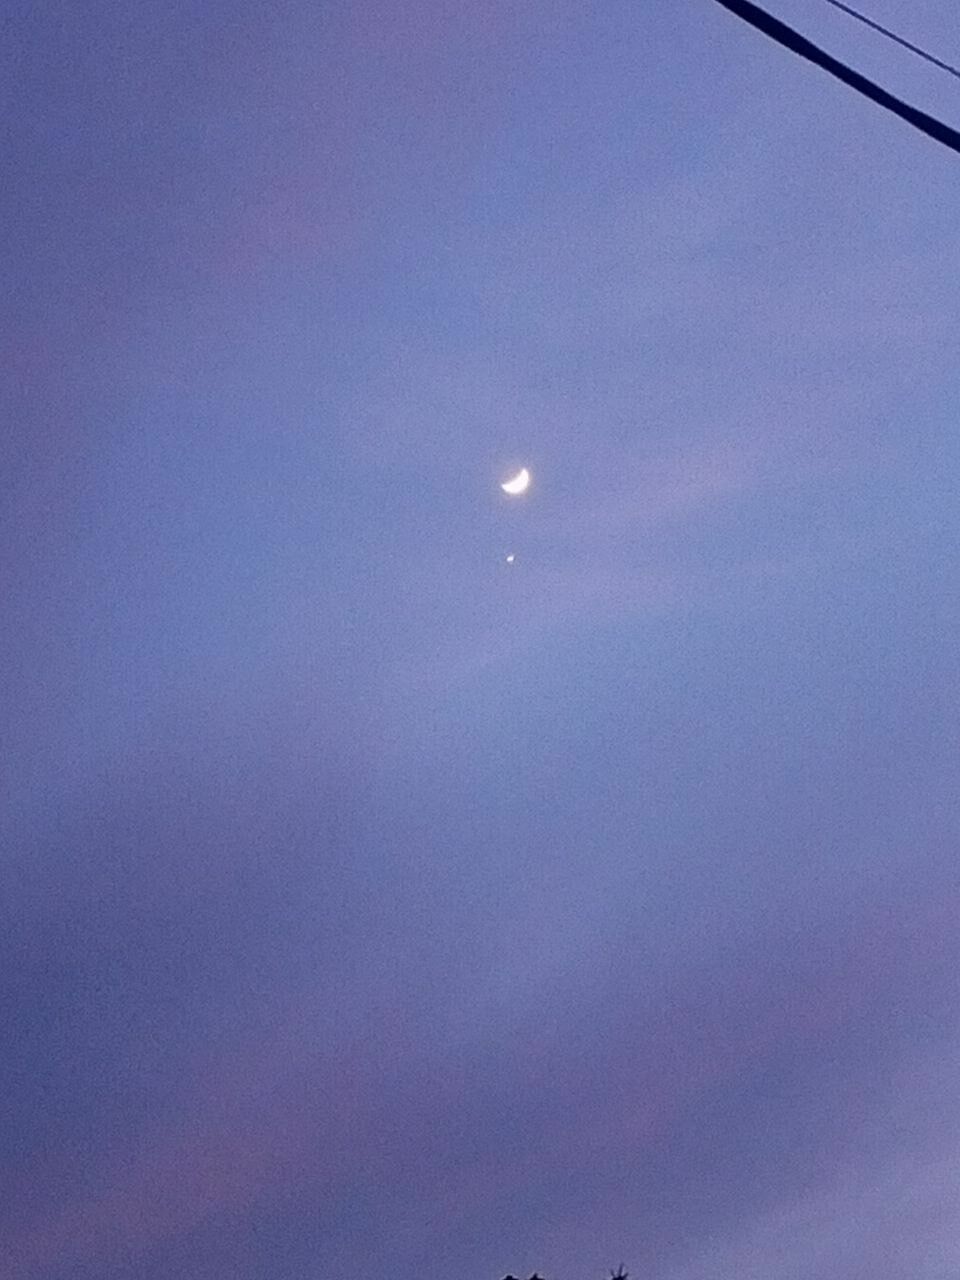 Жители Ставрополья поделились снимками сближения Луны и Венеры11